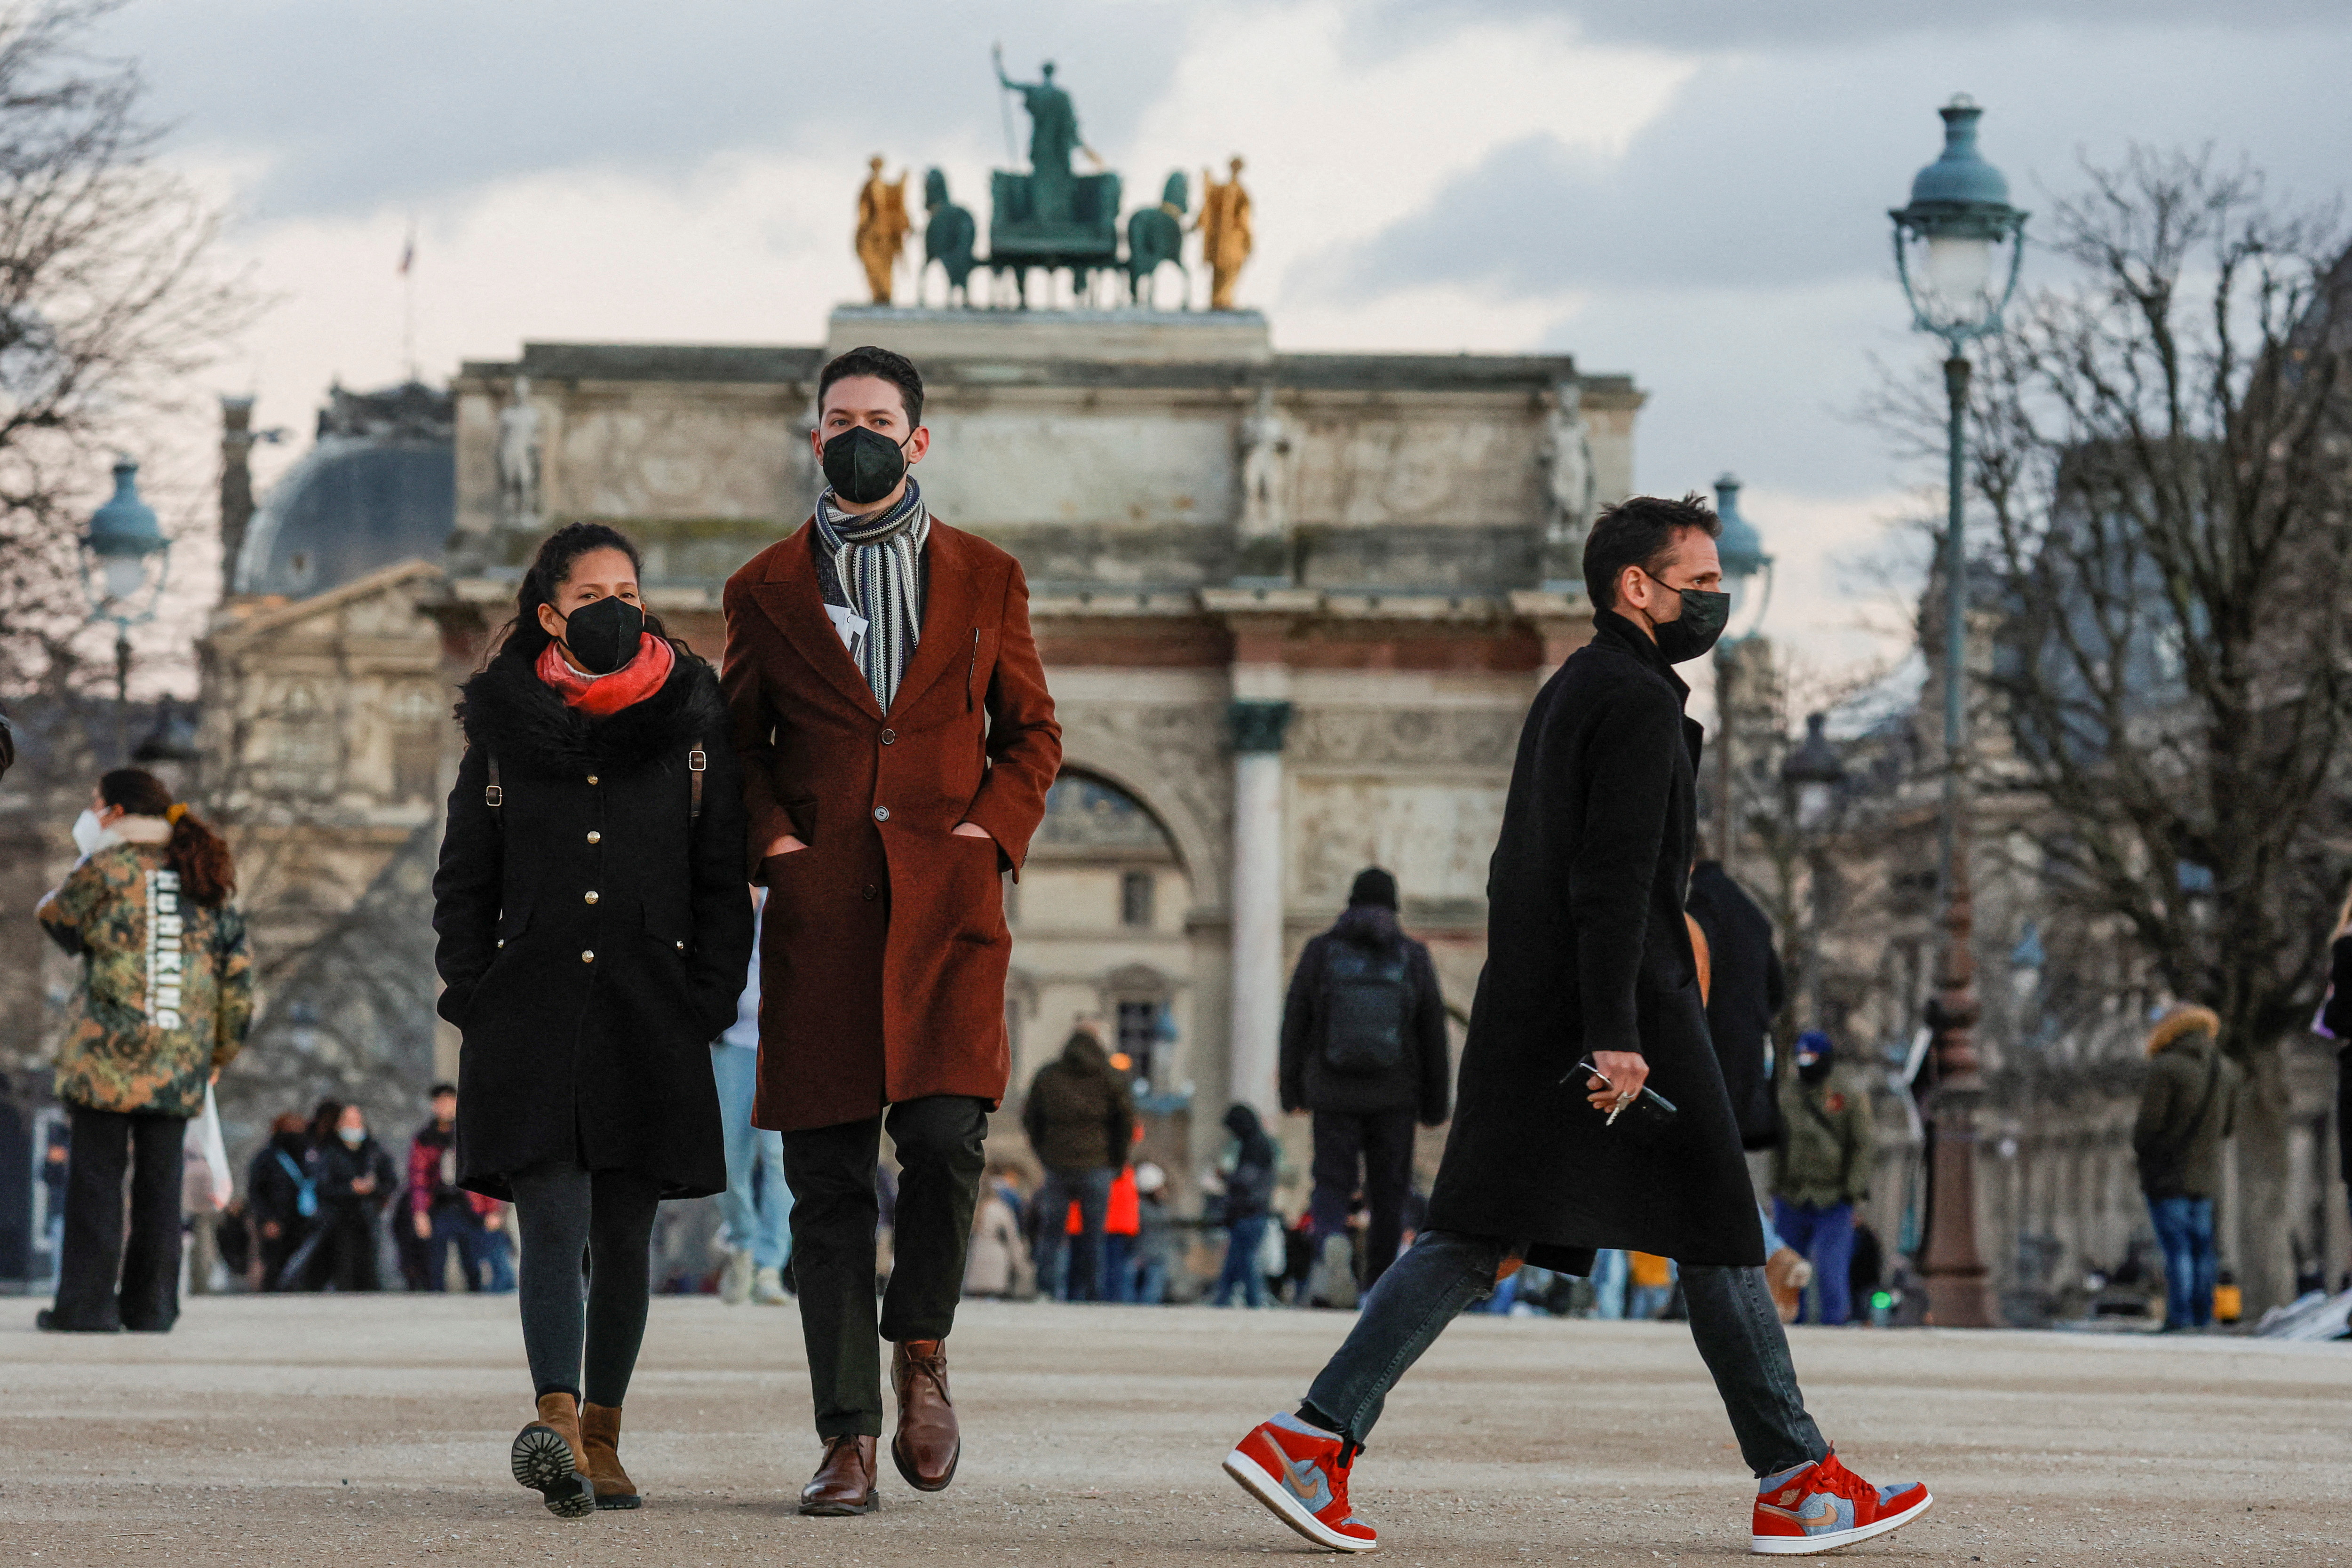 Mense wat beskermende gesigmaskers dra, loop in die Tuileries-tuine in Parys te midde van die uitbreek van die koronavirussiekte (COVID-19) in Frankryk, 5 Januarie 2022. REUTERS/Gonzalo Fuentes